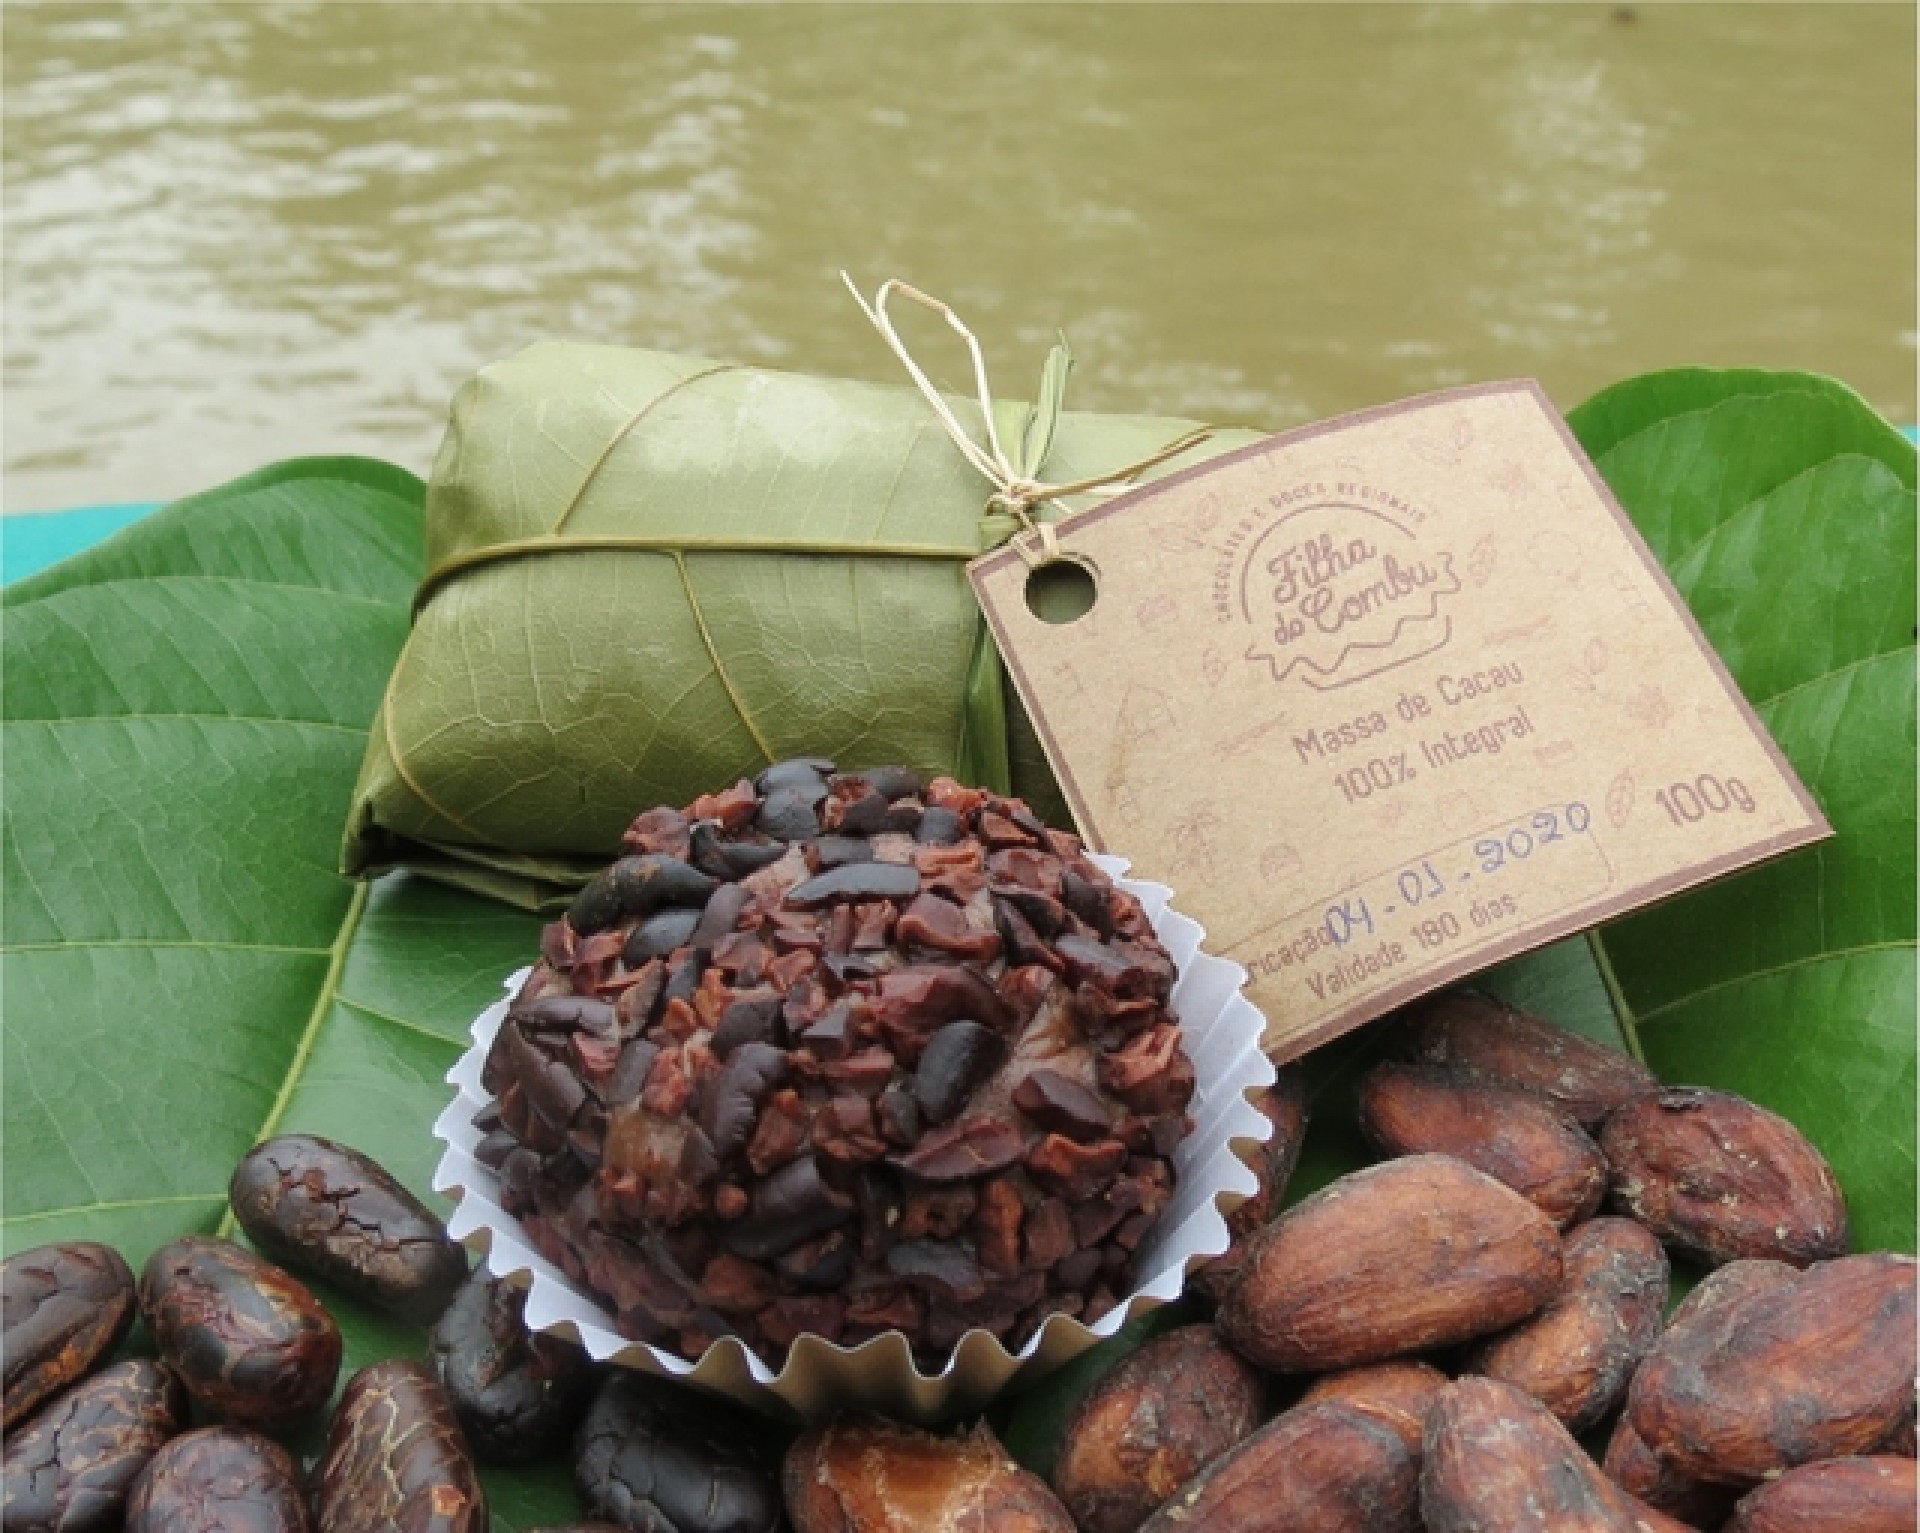 Chocolate produzido na ilha do Combu, em Belém do Pará, 
utilizando cacau nativo do quintal da Dona Nena e de seus familiares (Foto: Reprodução)